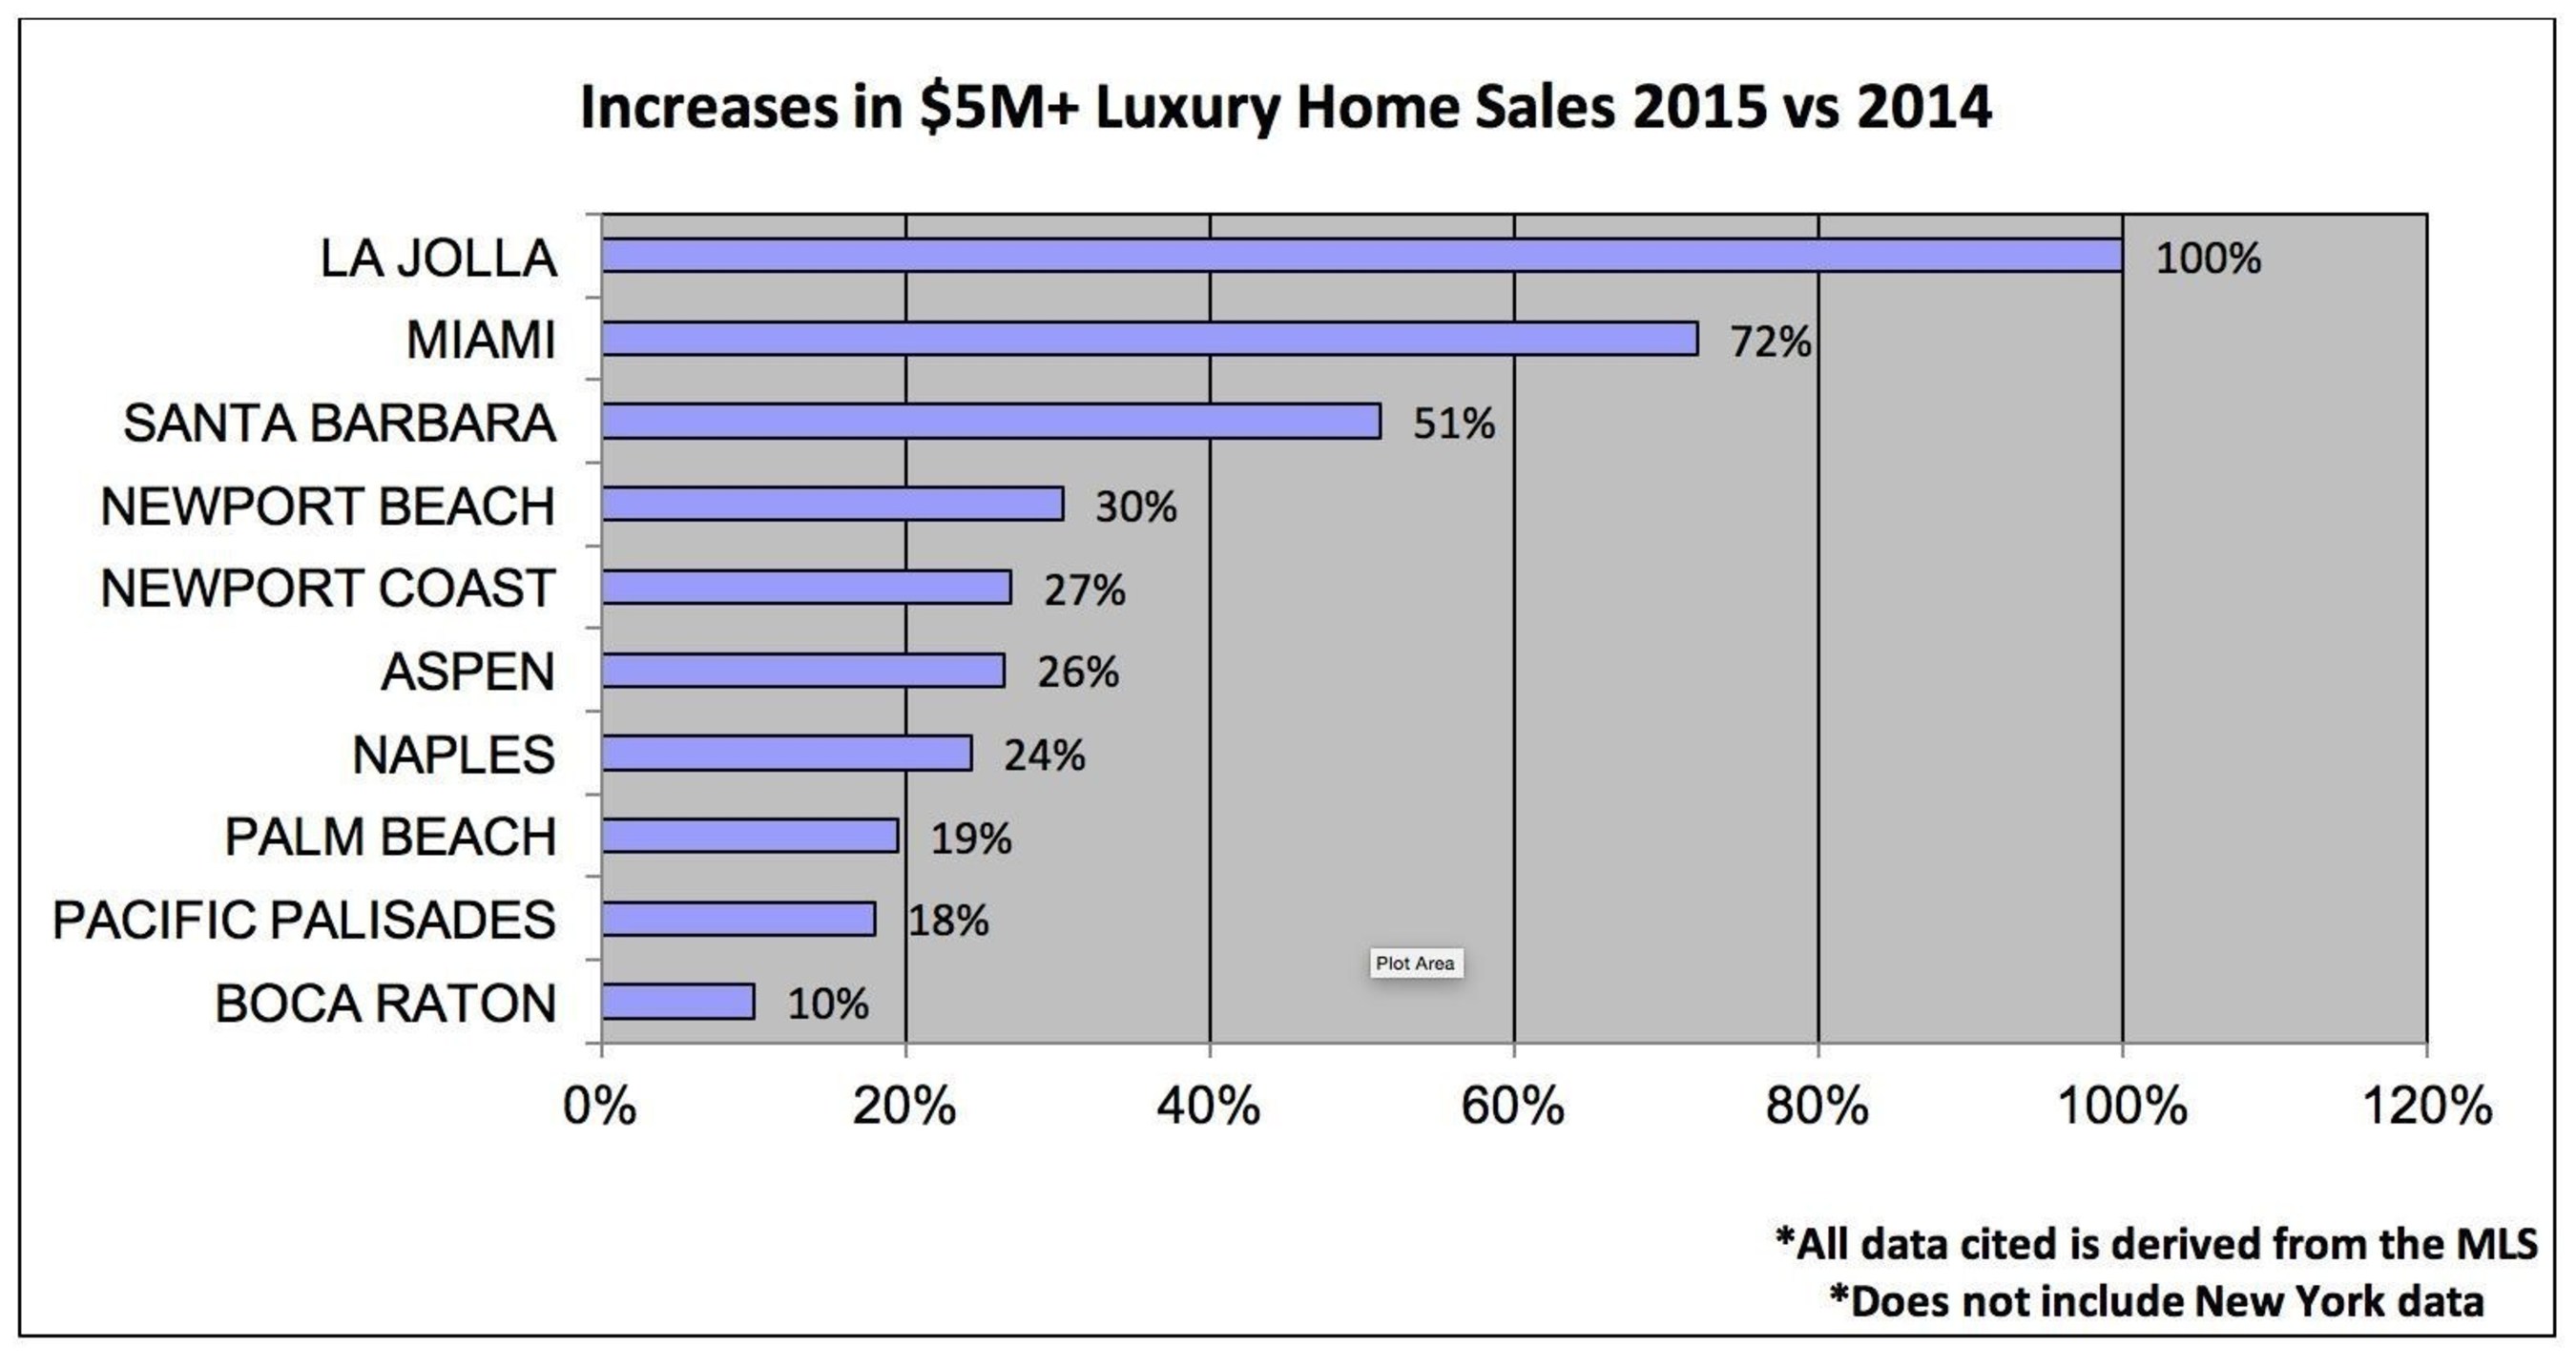 Increases in $5M+ Luxury Home Sales 2015 vs 2014